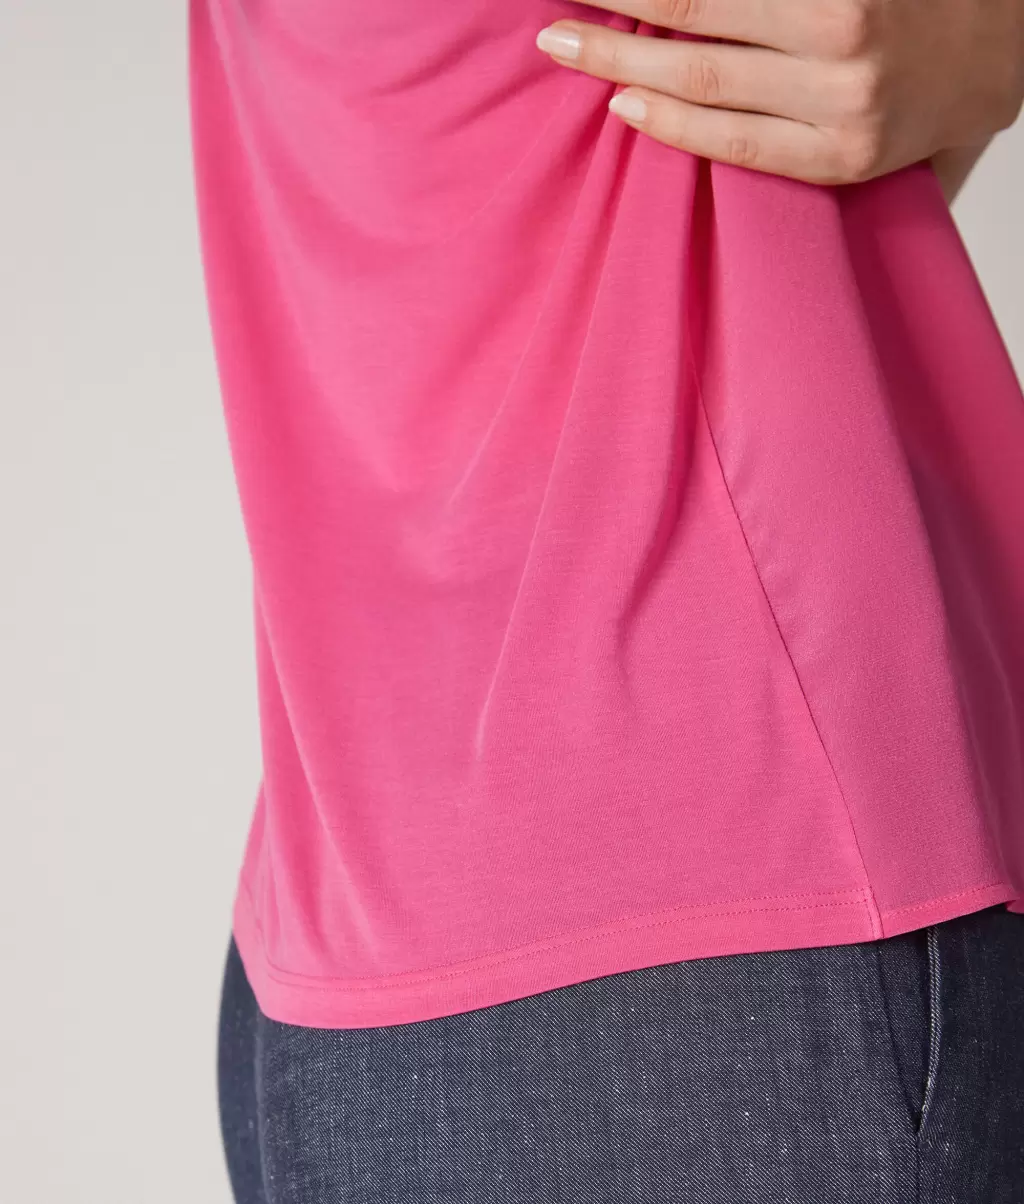 Topy I T-Shirty Kobieta Jedwabna Koszulka Z Okrągłym Dekoltem Falconeri Pink - 3